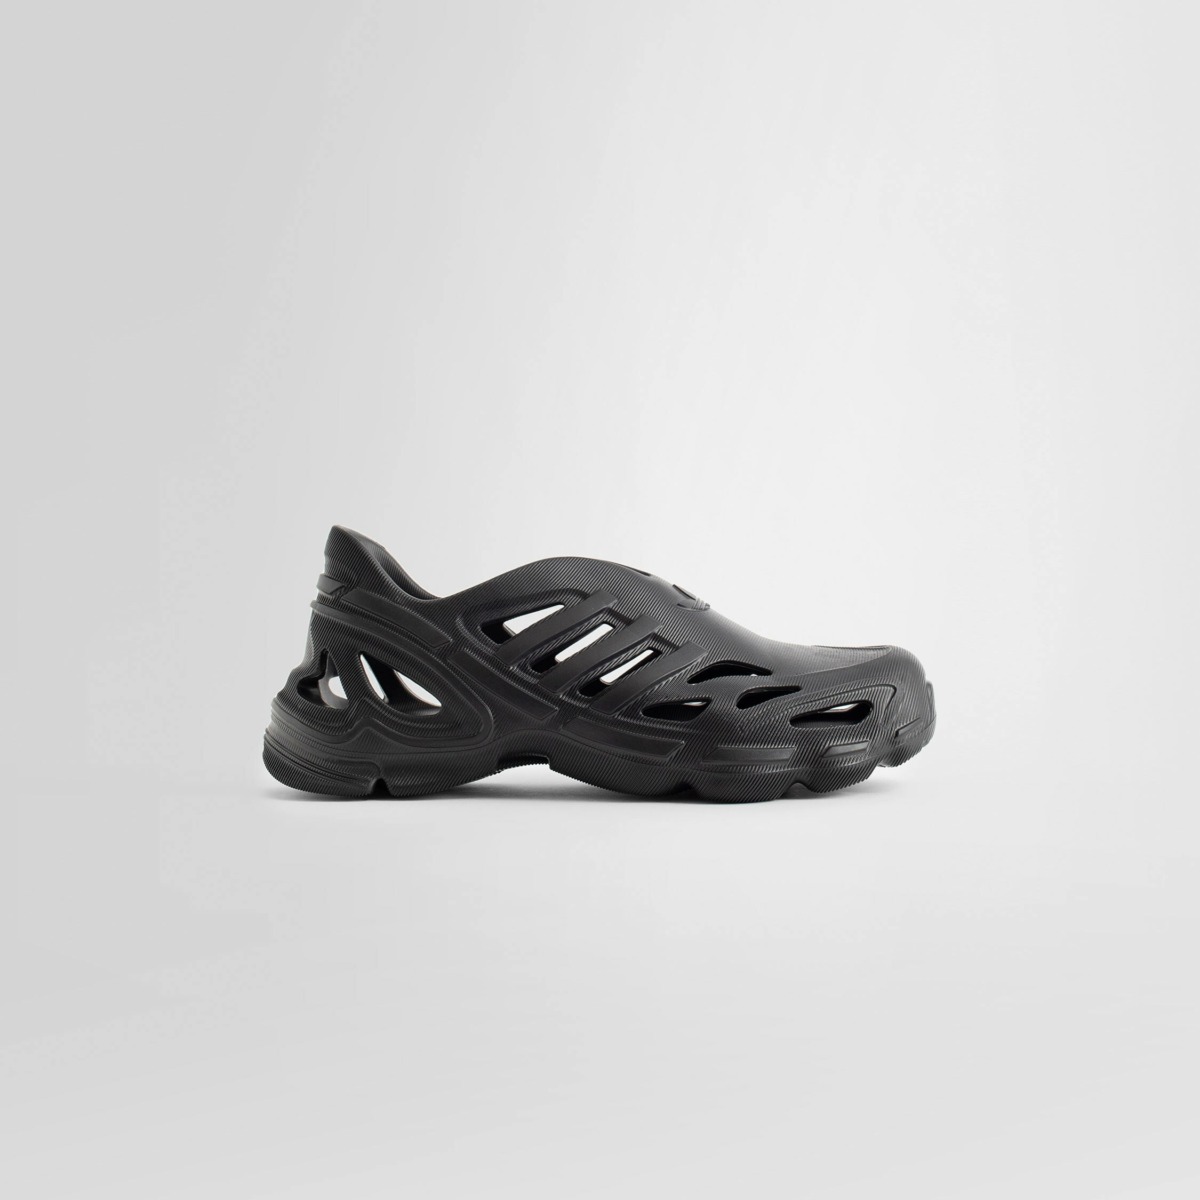 Antonioli Sliders Black Adidas Gents GOOFASH